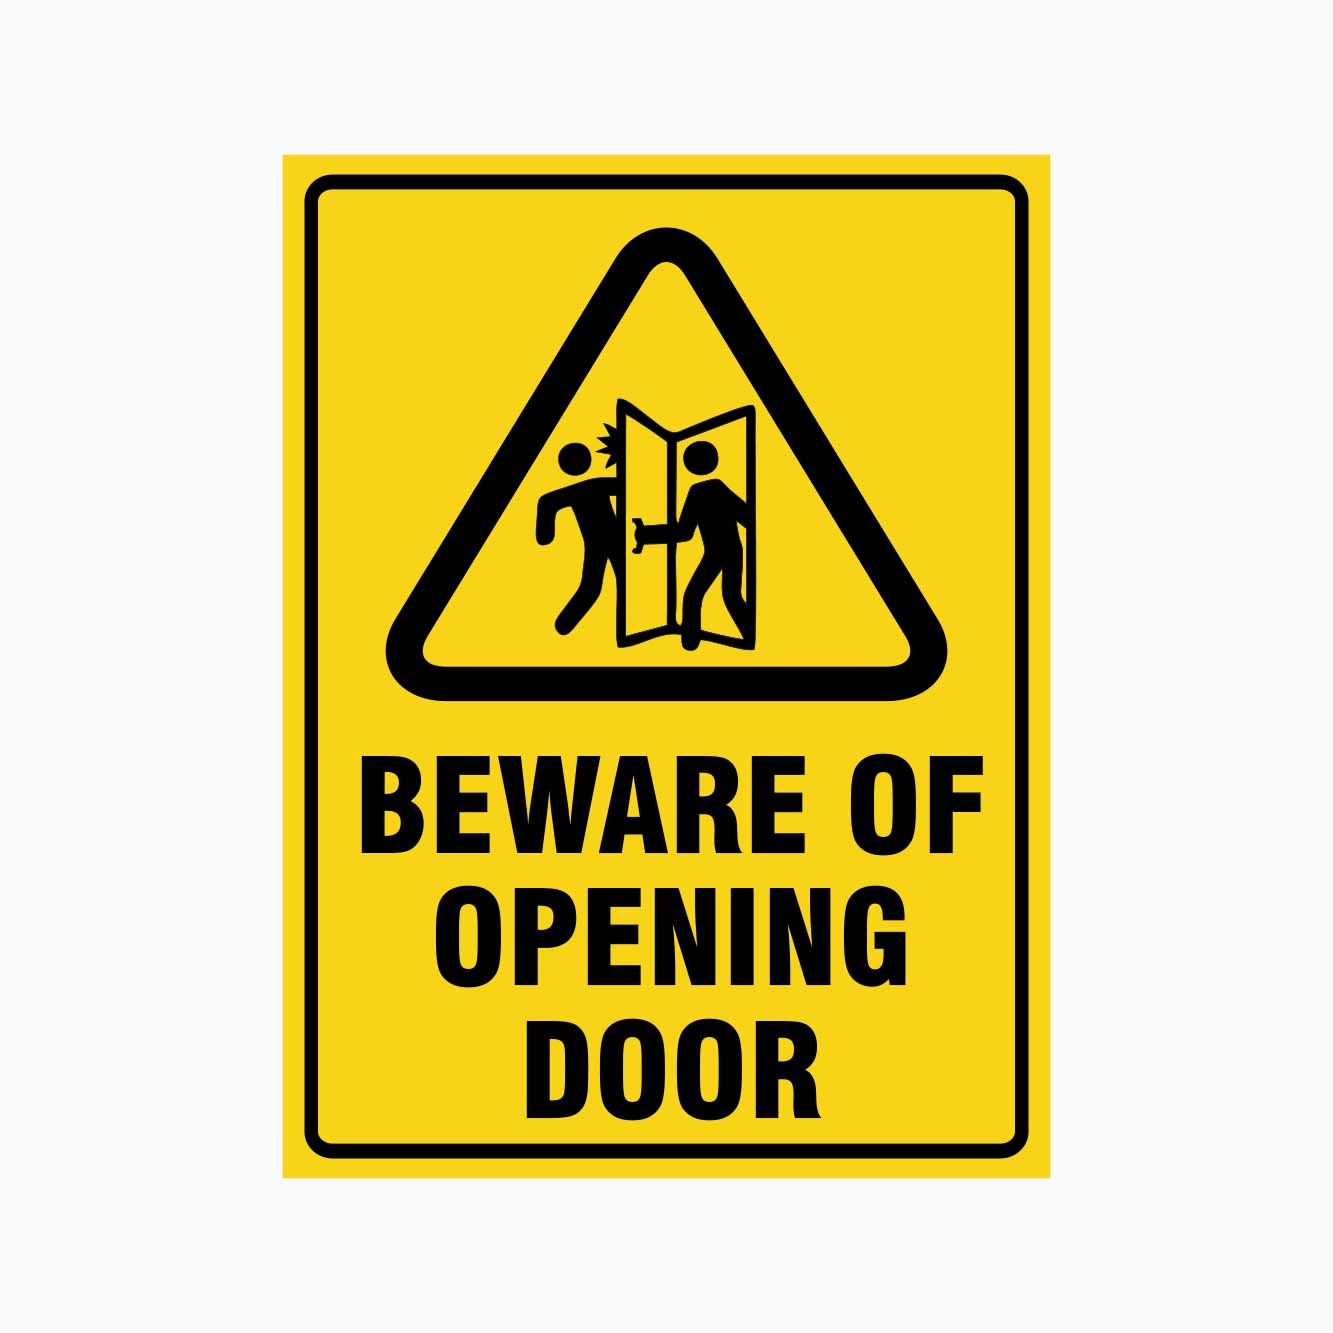 BEWARE OF OPENING DOOR SIGN - GET SIGNS